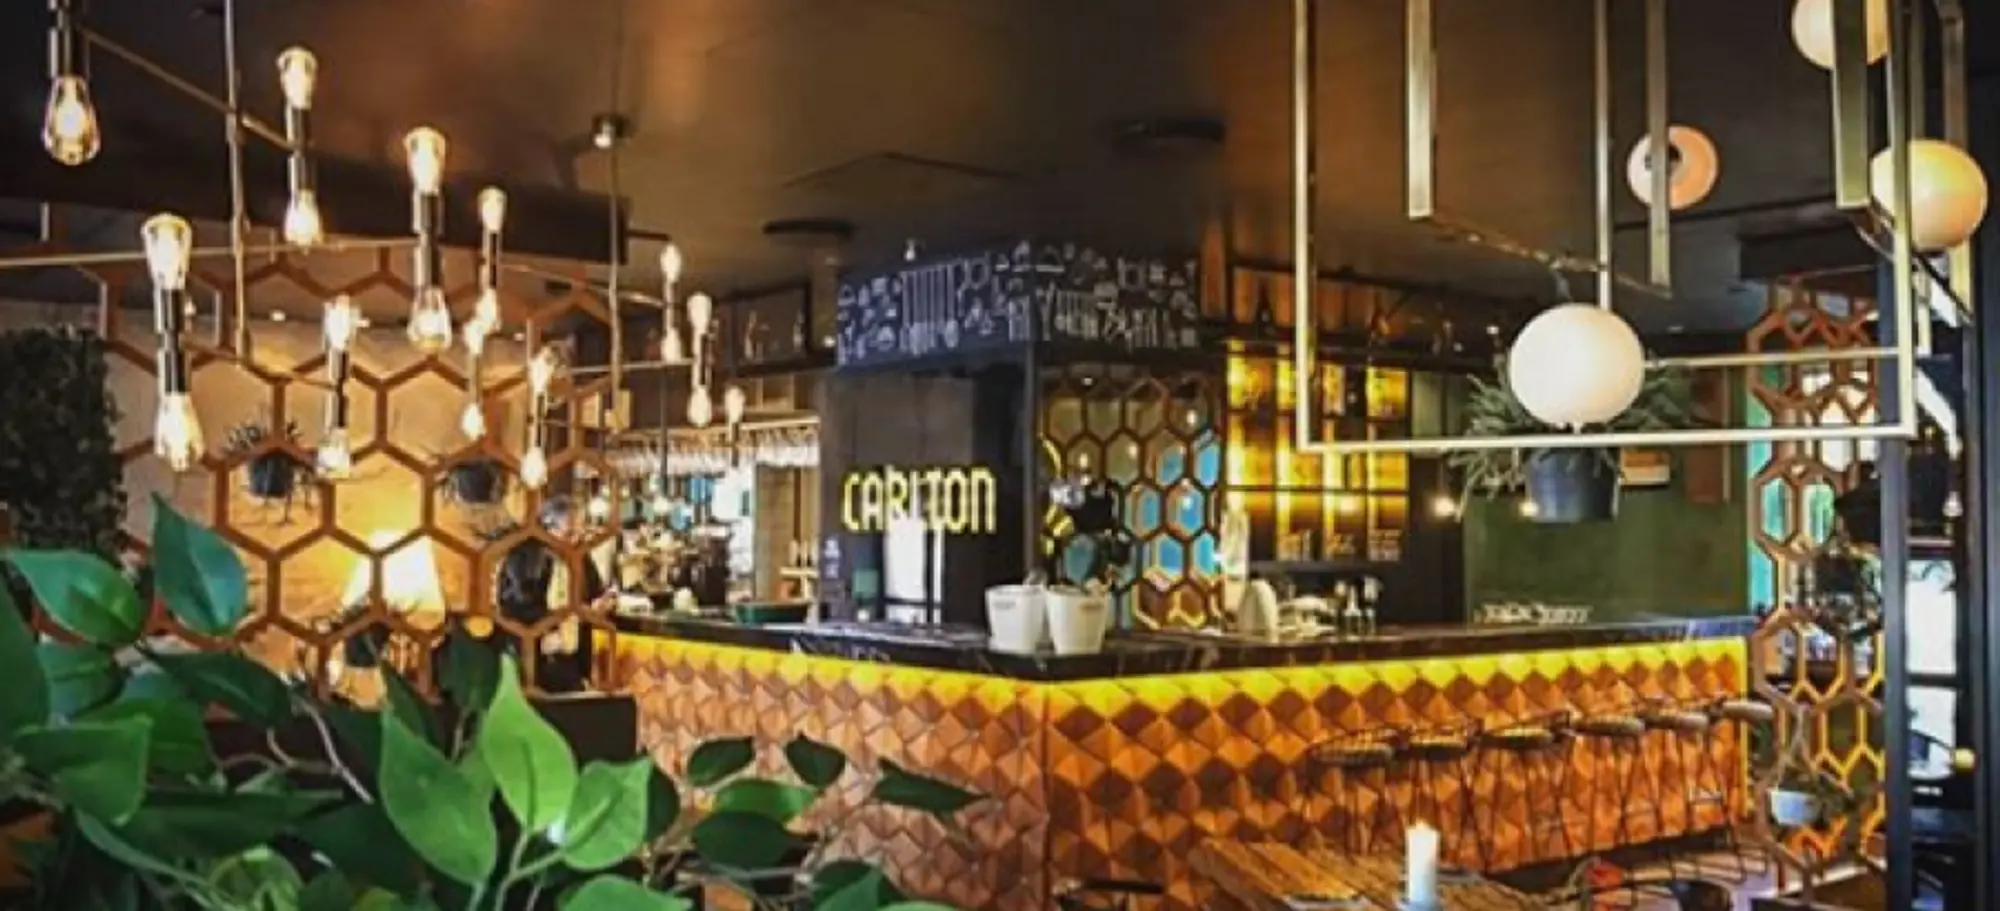 Menu image of Hot drinks. restaurant carlton's menu - københavn | cafe & bar in københavn